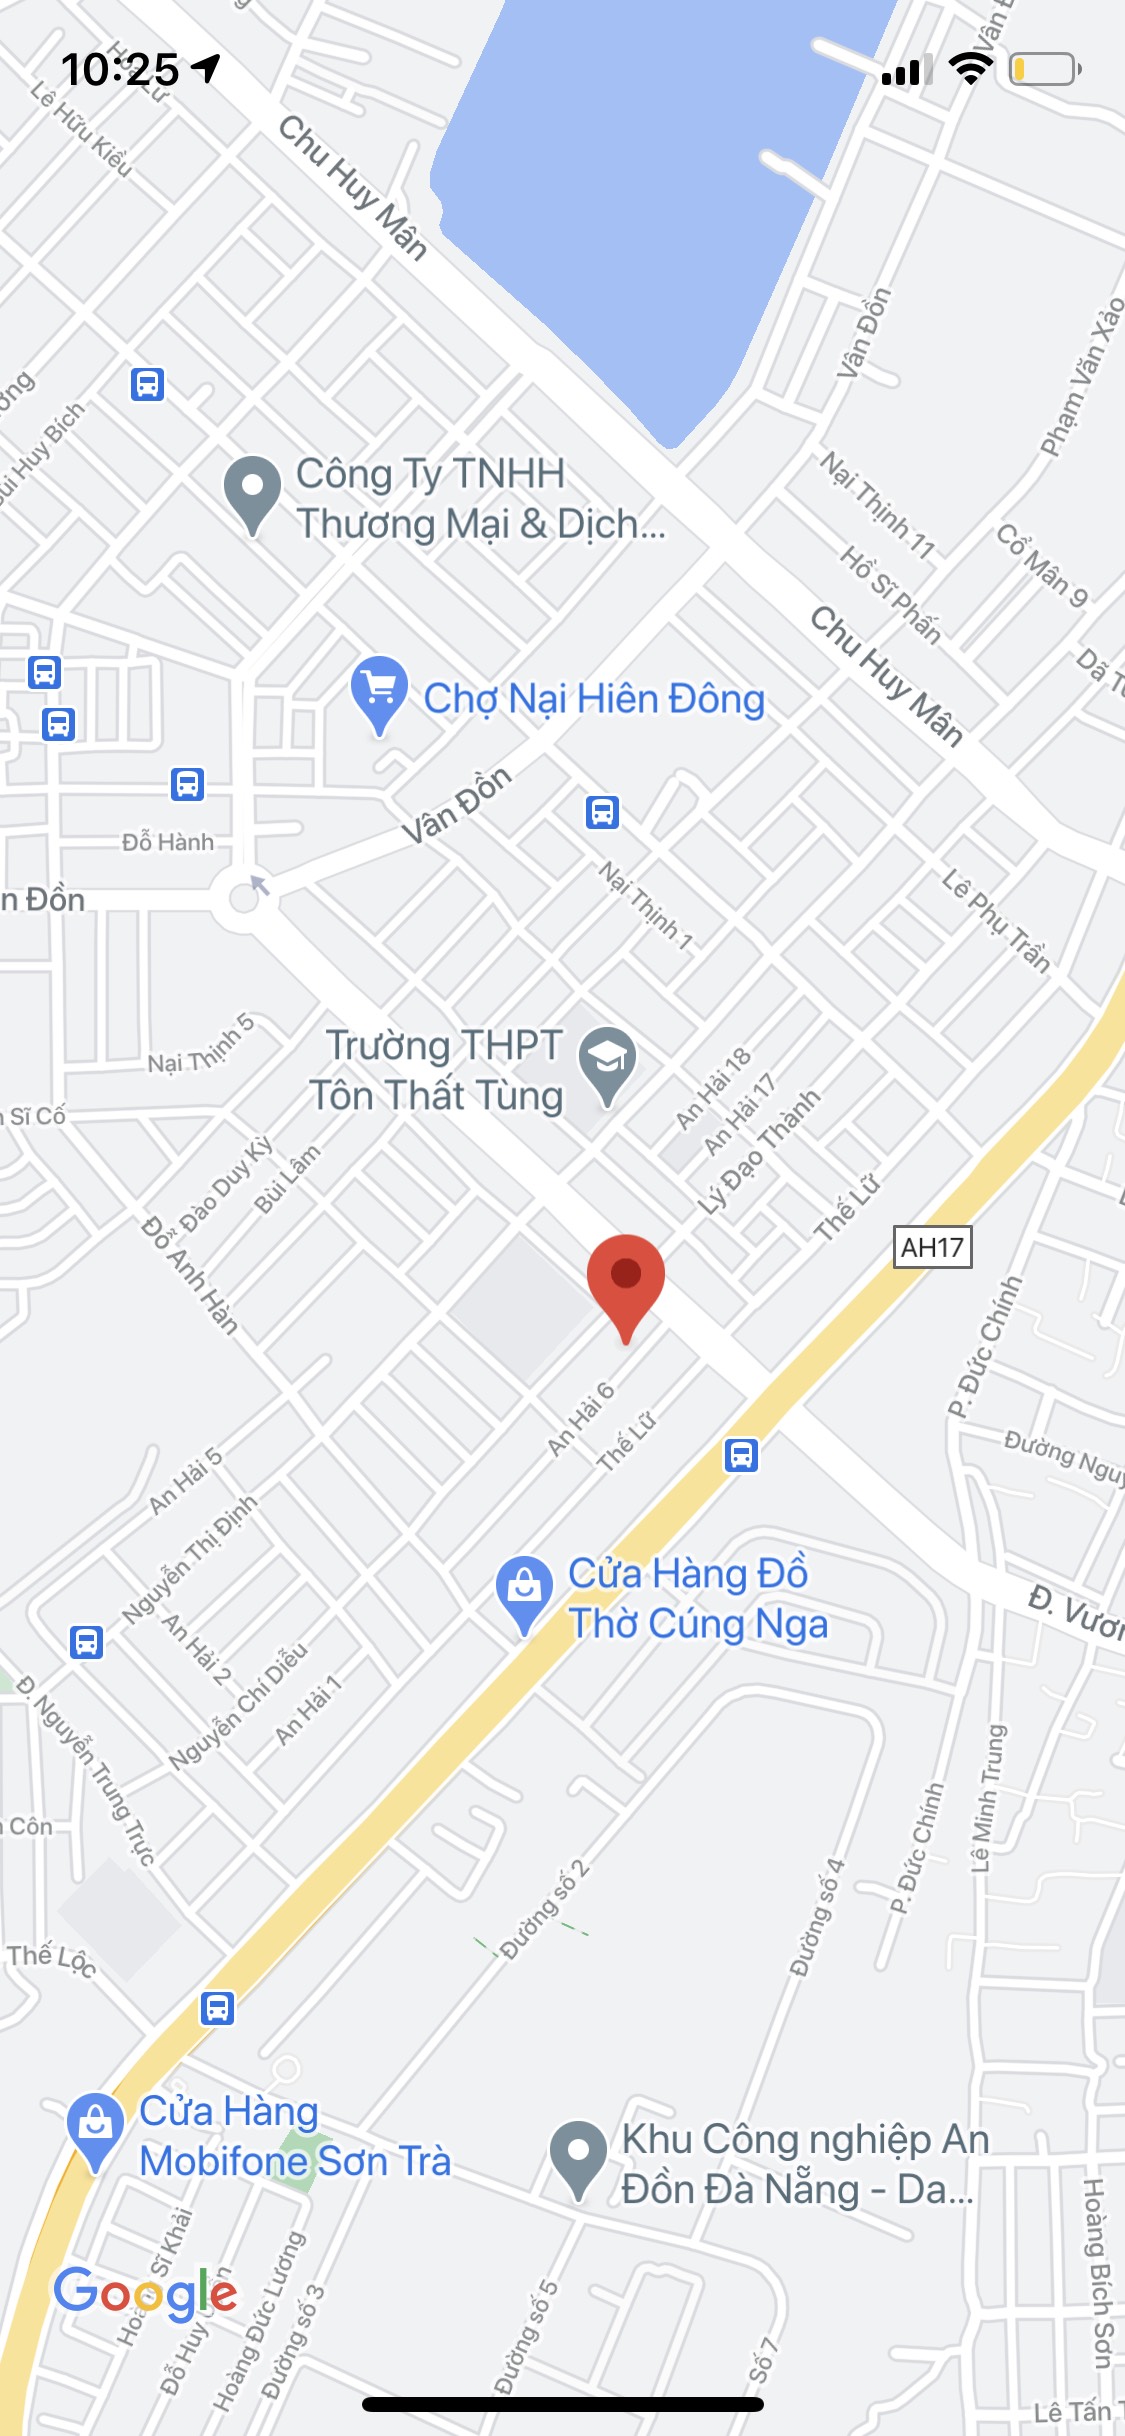 Bán nhà mặt tiền đường An Hải 6, P. An Hải Bắc, Q. Sơn Trà. DT: 73m2, khu dân cư. Gía: 4,45 tỷ